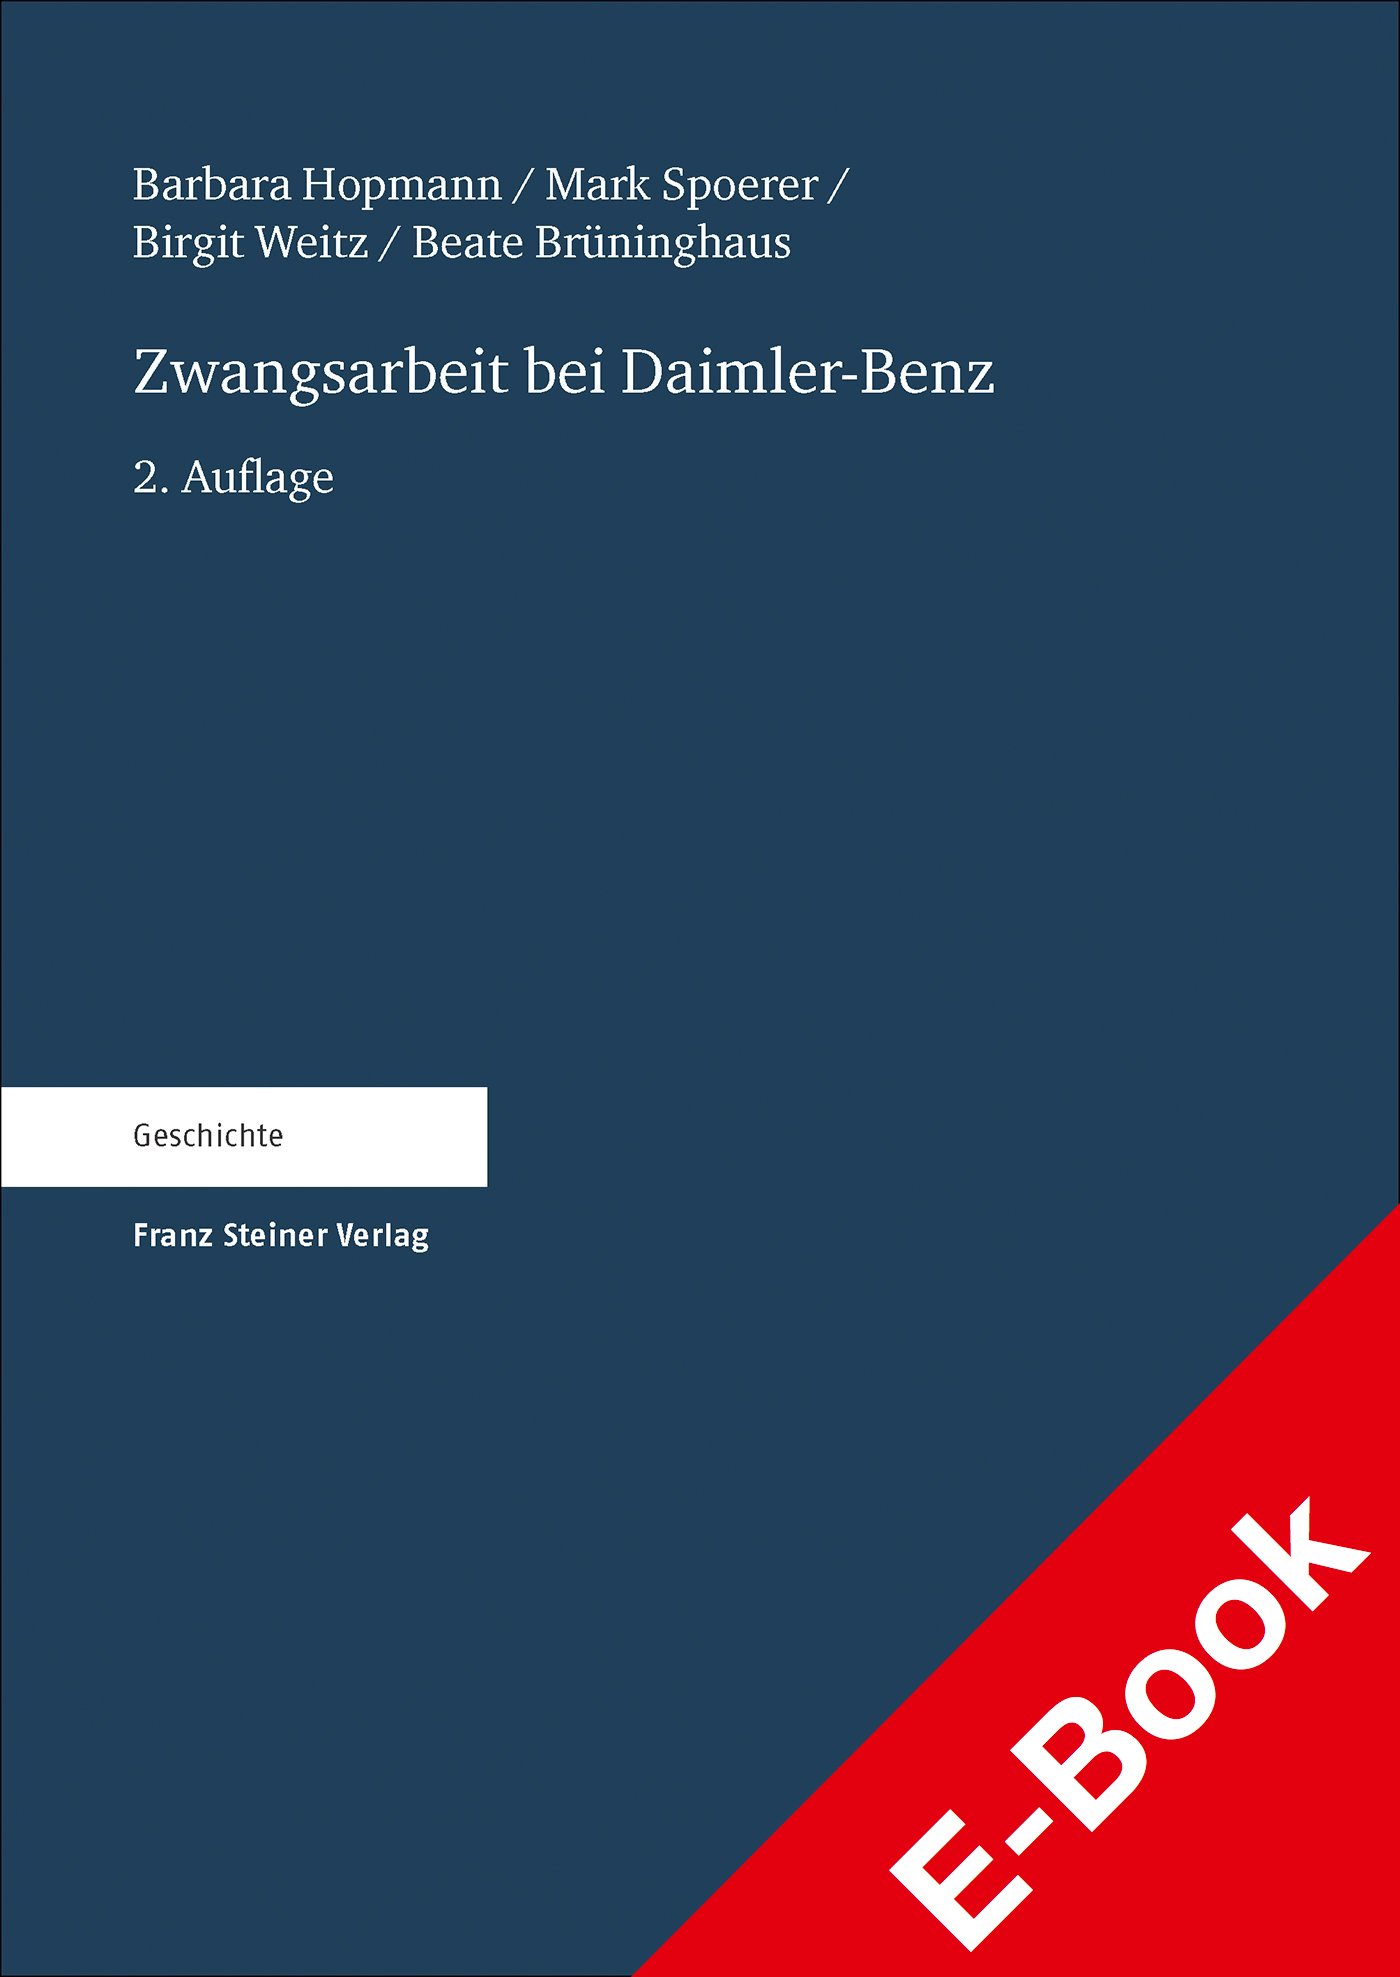 Zwangsarbeit bei Daimler-Benz